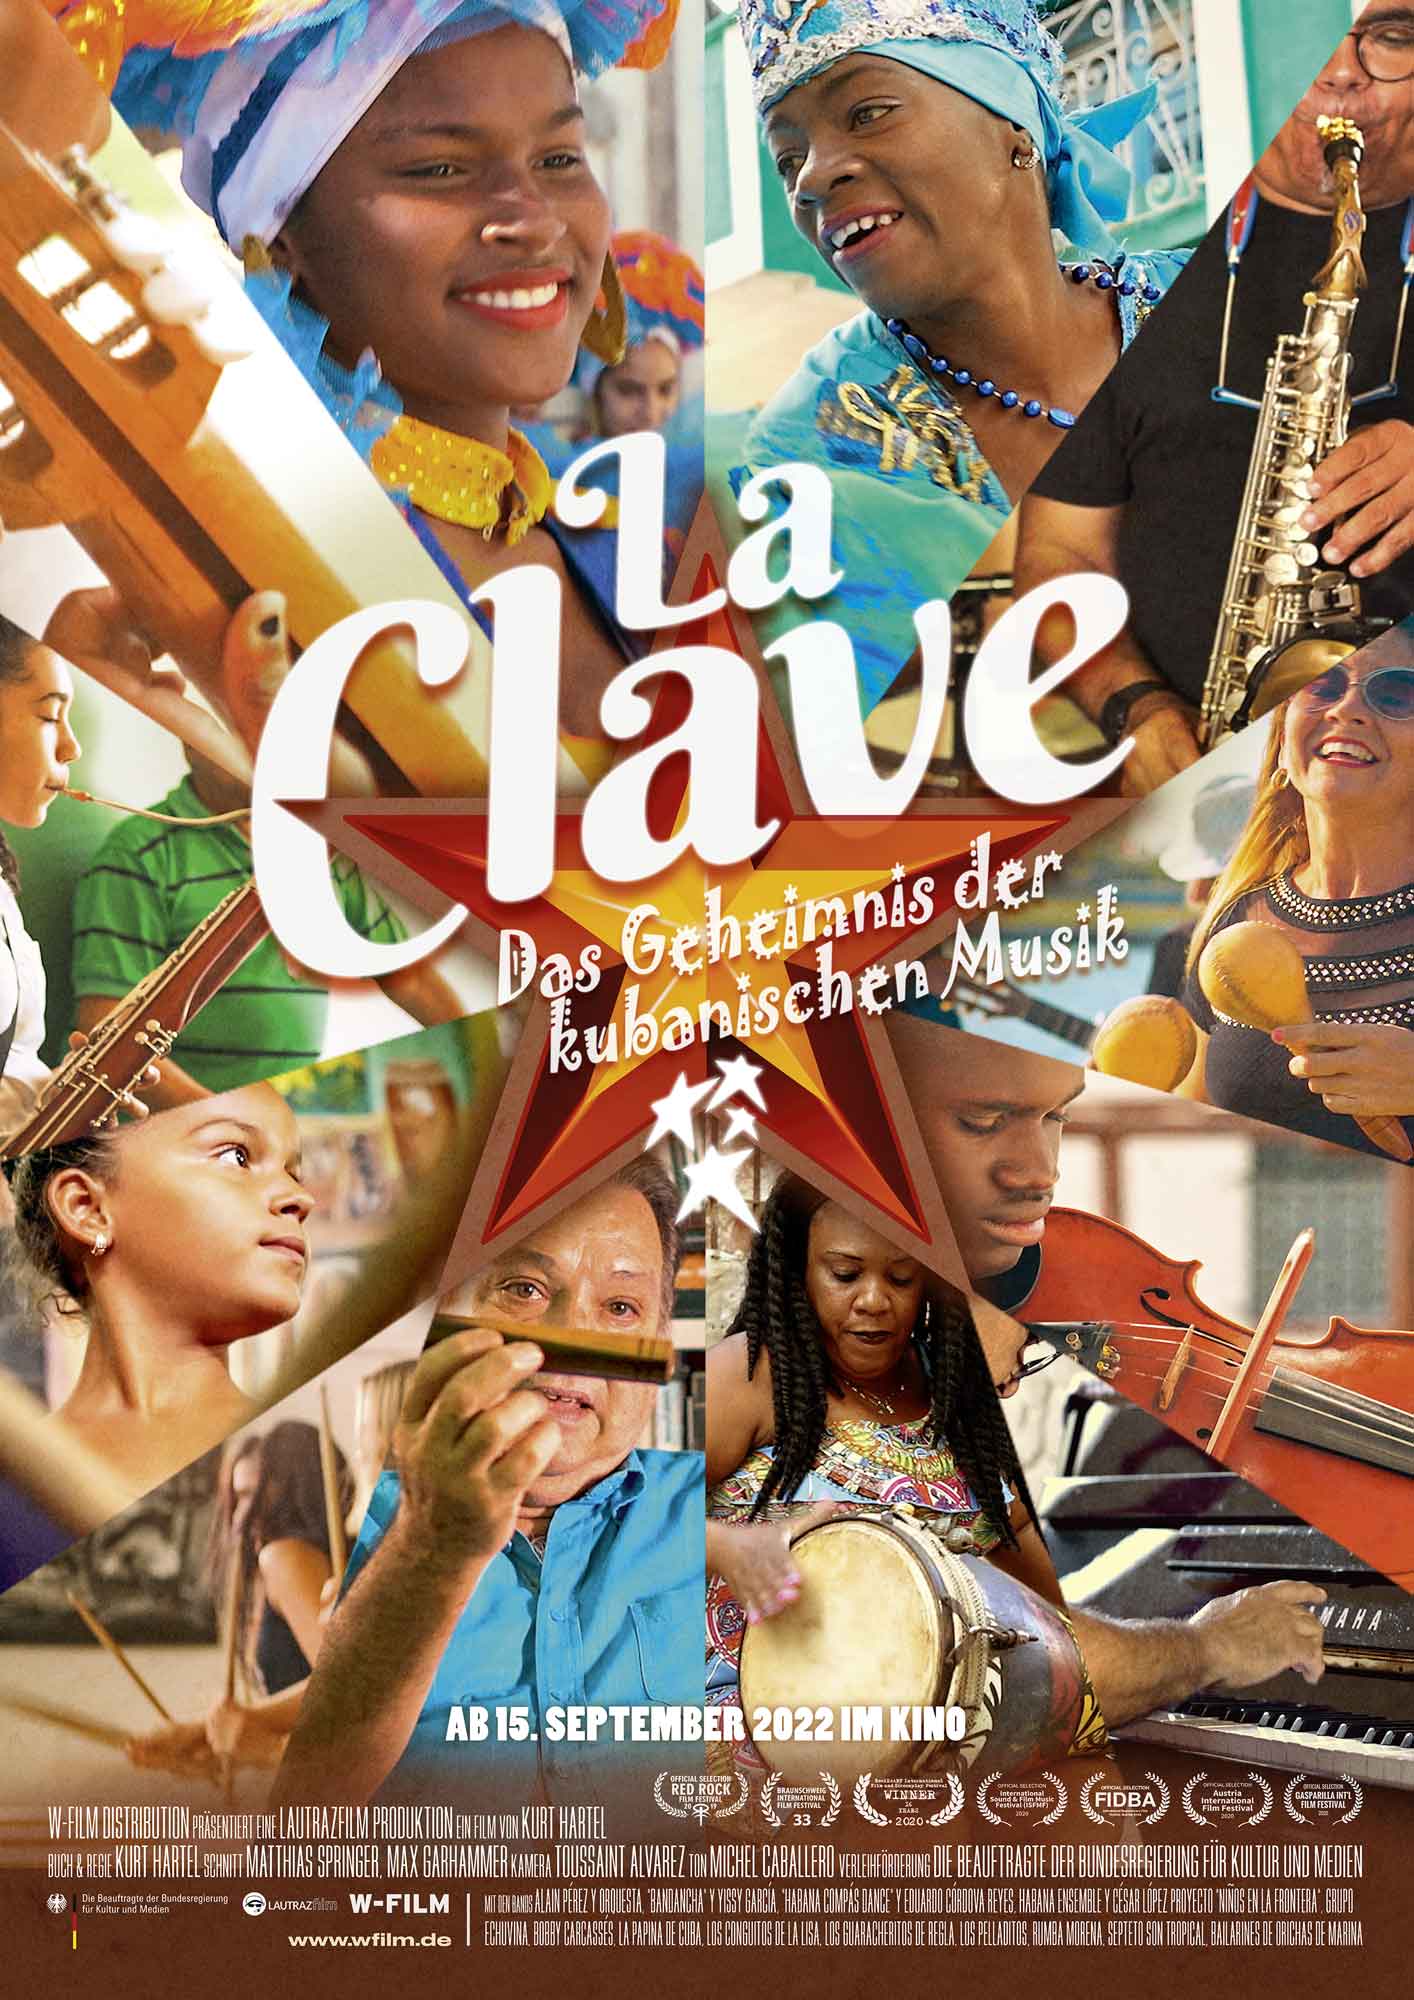 La Clave  Das Geheimnis der kubanischen Musik